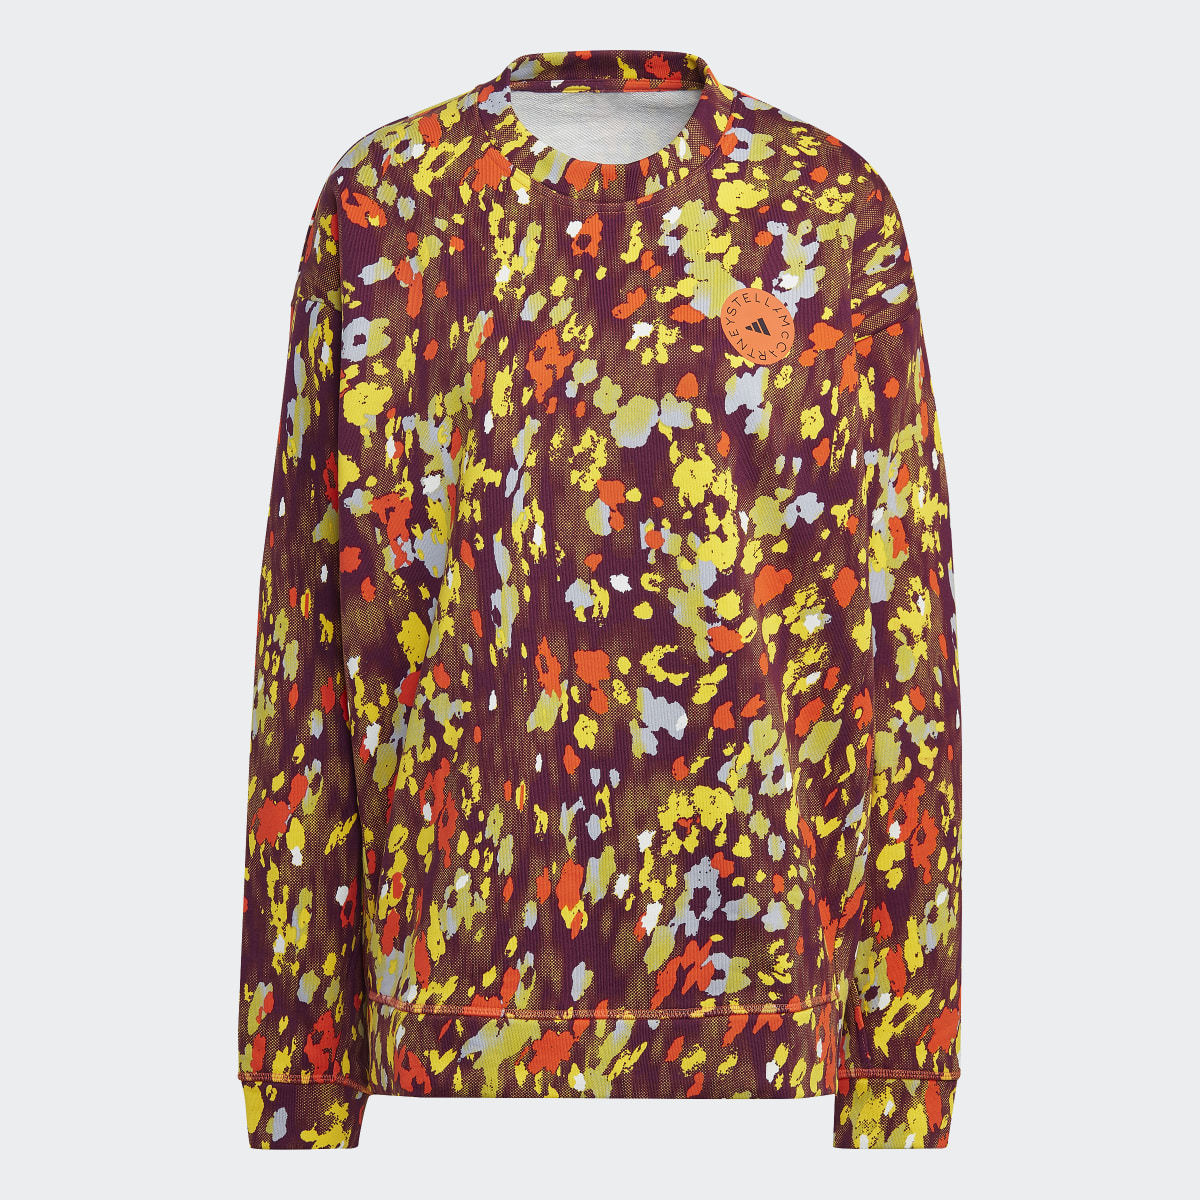 Adidas by Stella McCartney Floral Print Sweatshirt. 4